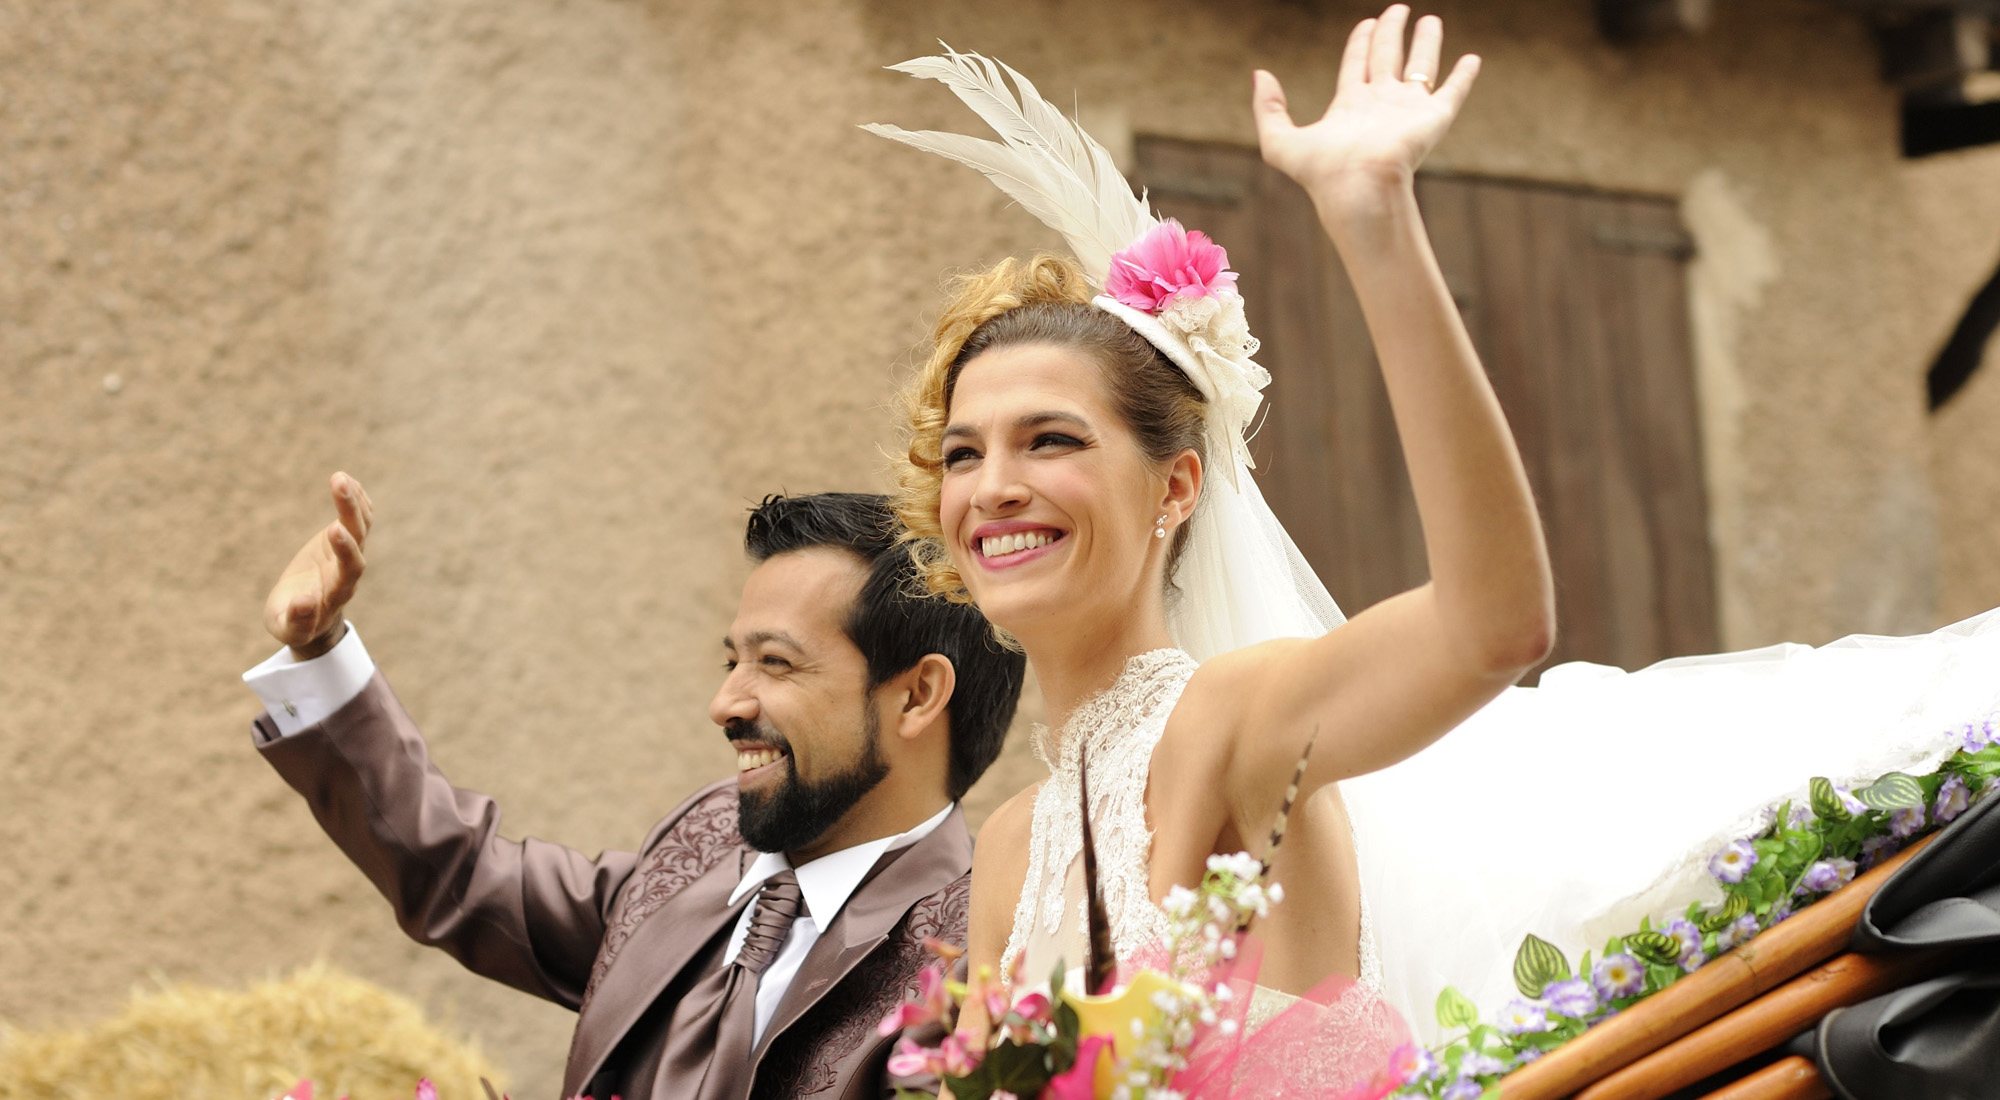 Fotograma de la película "3 bodas de más", donde Laura Sánchez daba vida a una mujer trans